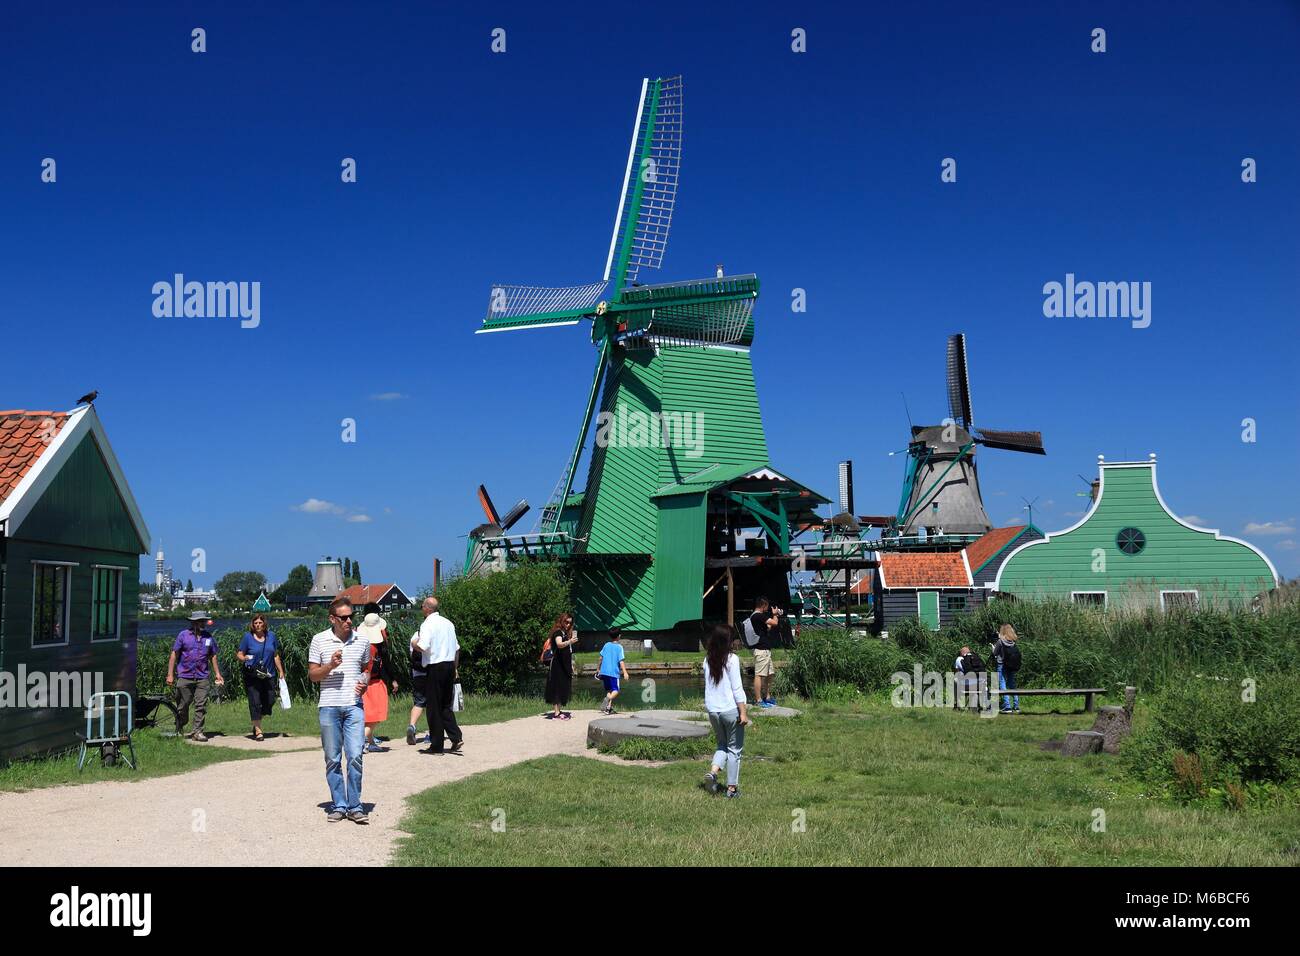 ZAANSE SCHANS, NETHERLANDS - JULY 9, 2017: People visit Zaanse Schans restored village in the Netherlands. The popular tourist attraction had 1.6 mill Stock Photo